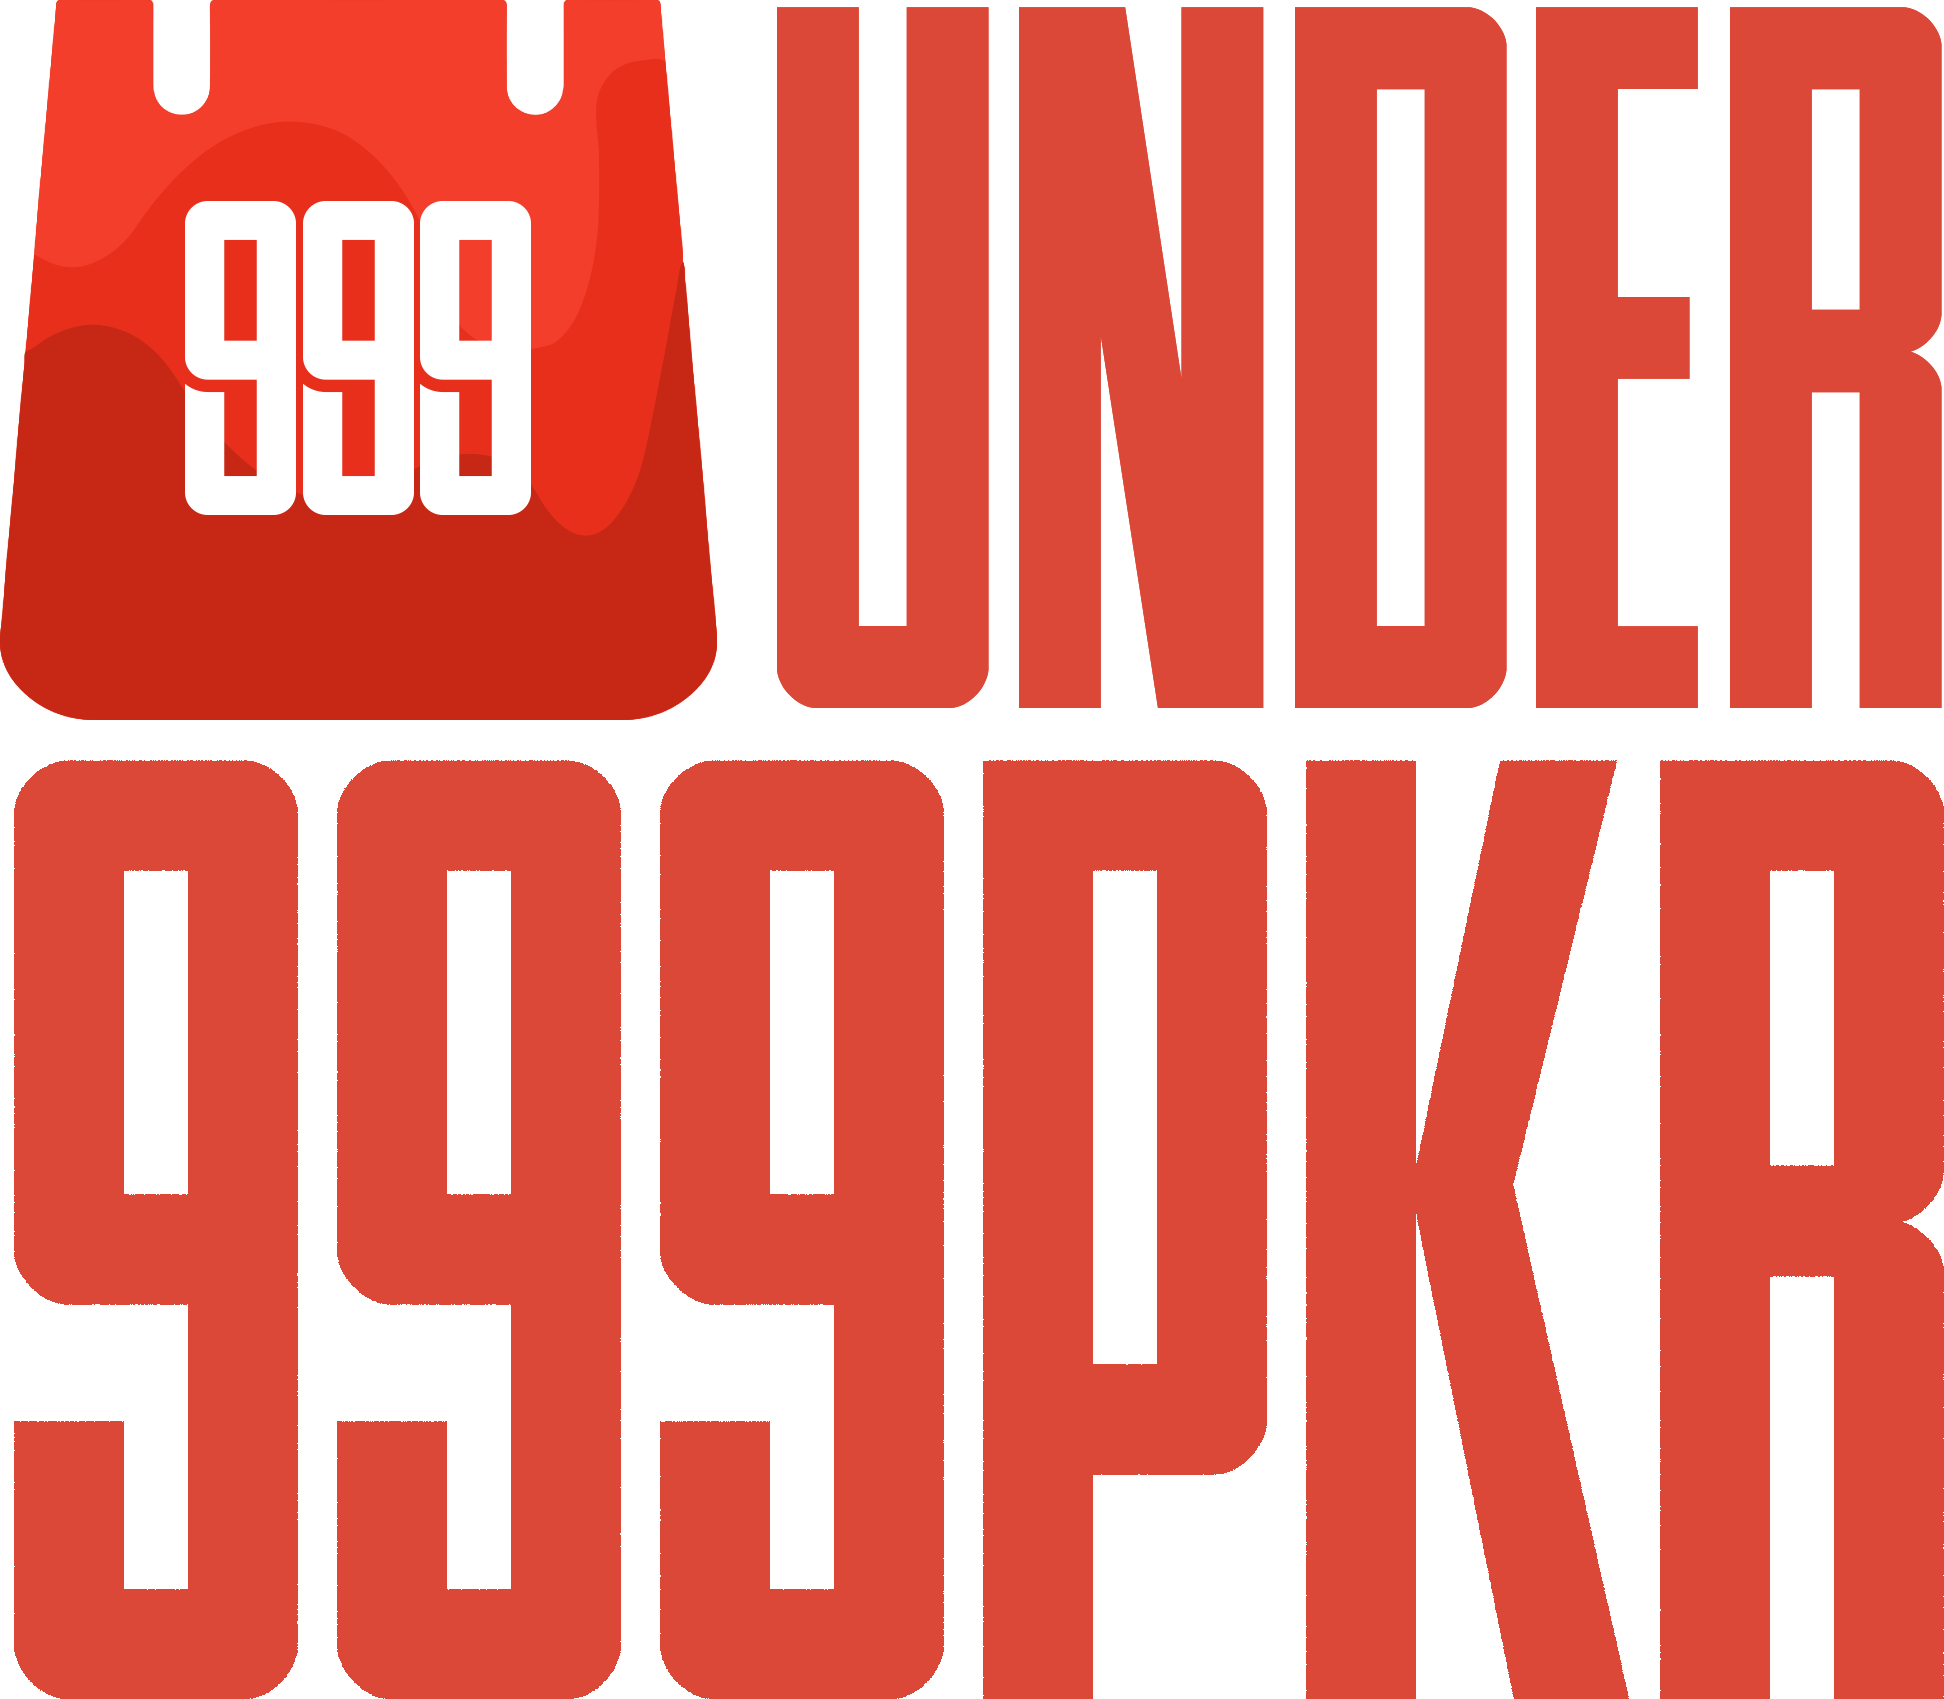 Under999PKR